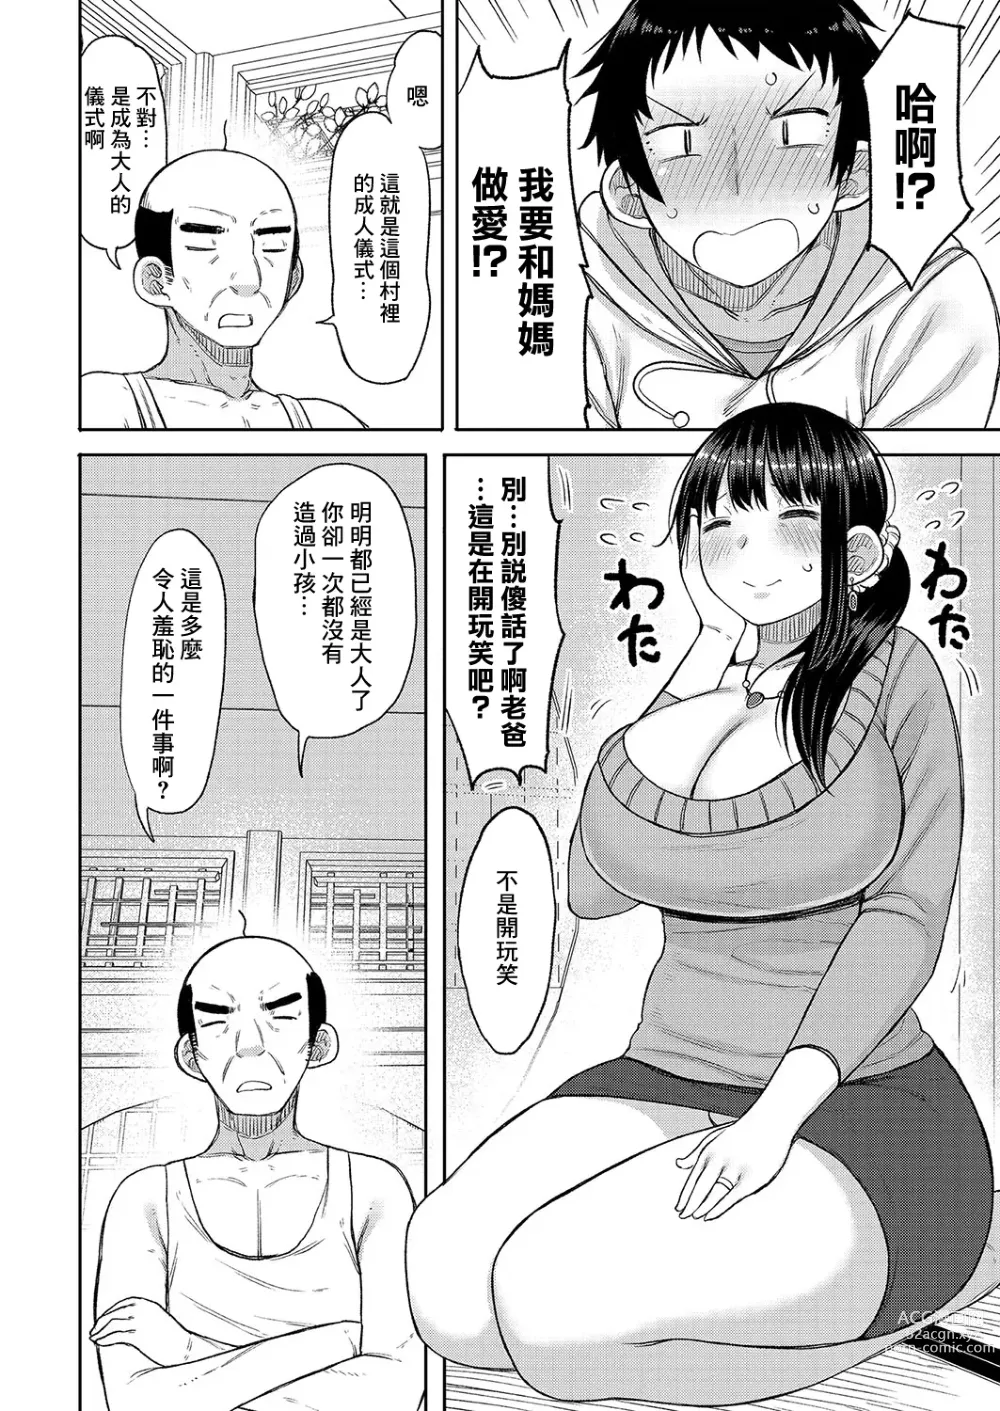 Page 2 of manga Kono Mura ni wa Haha ga Musuko ni Sex o Oshieru Shikitari ga Arimasu